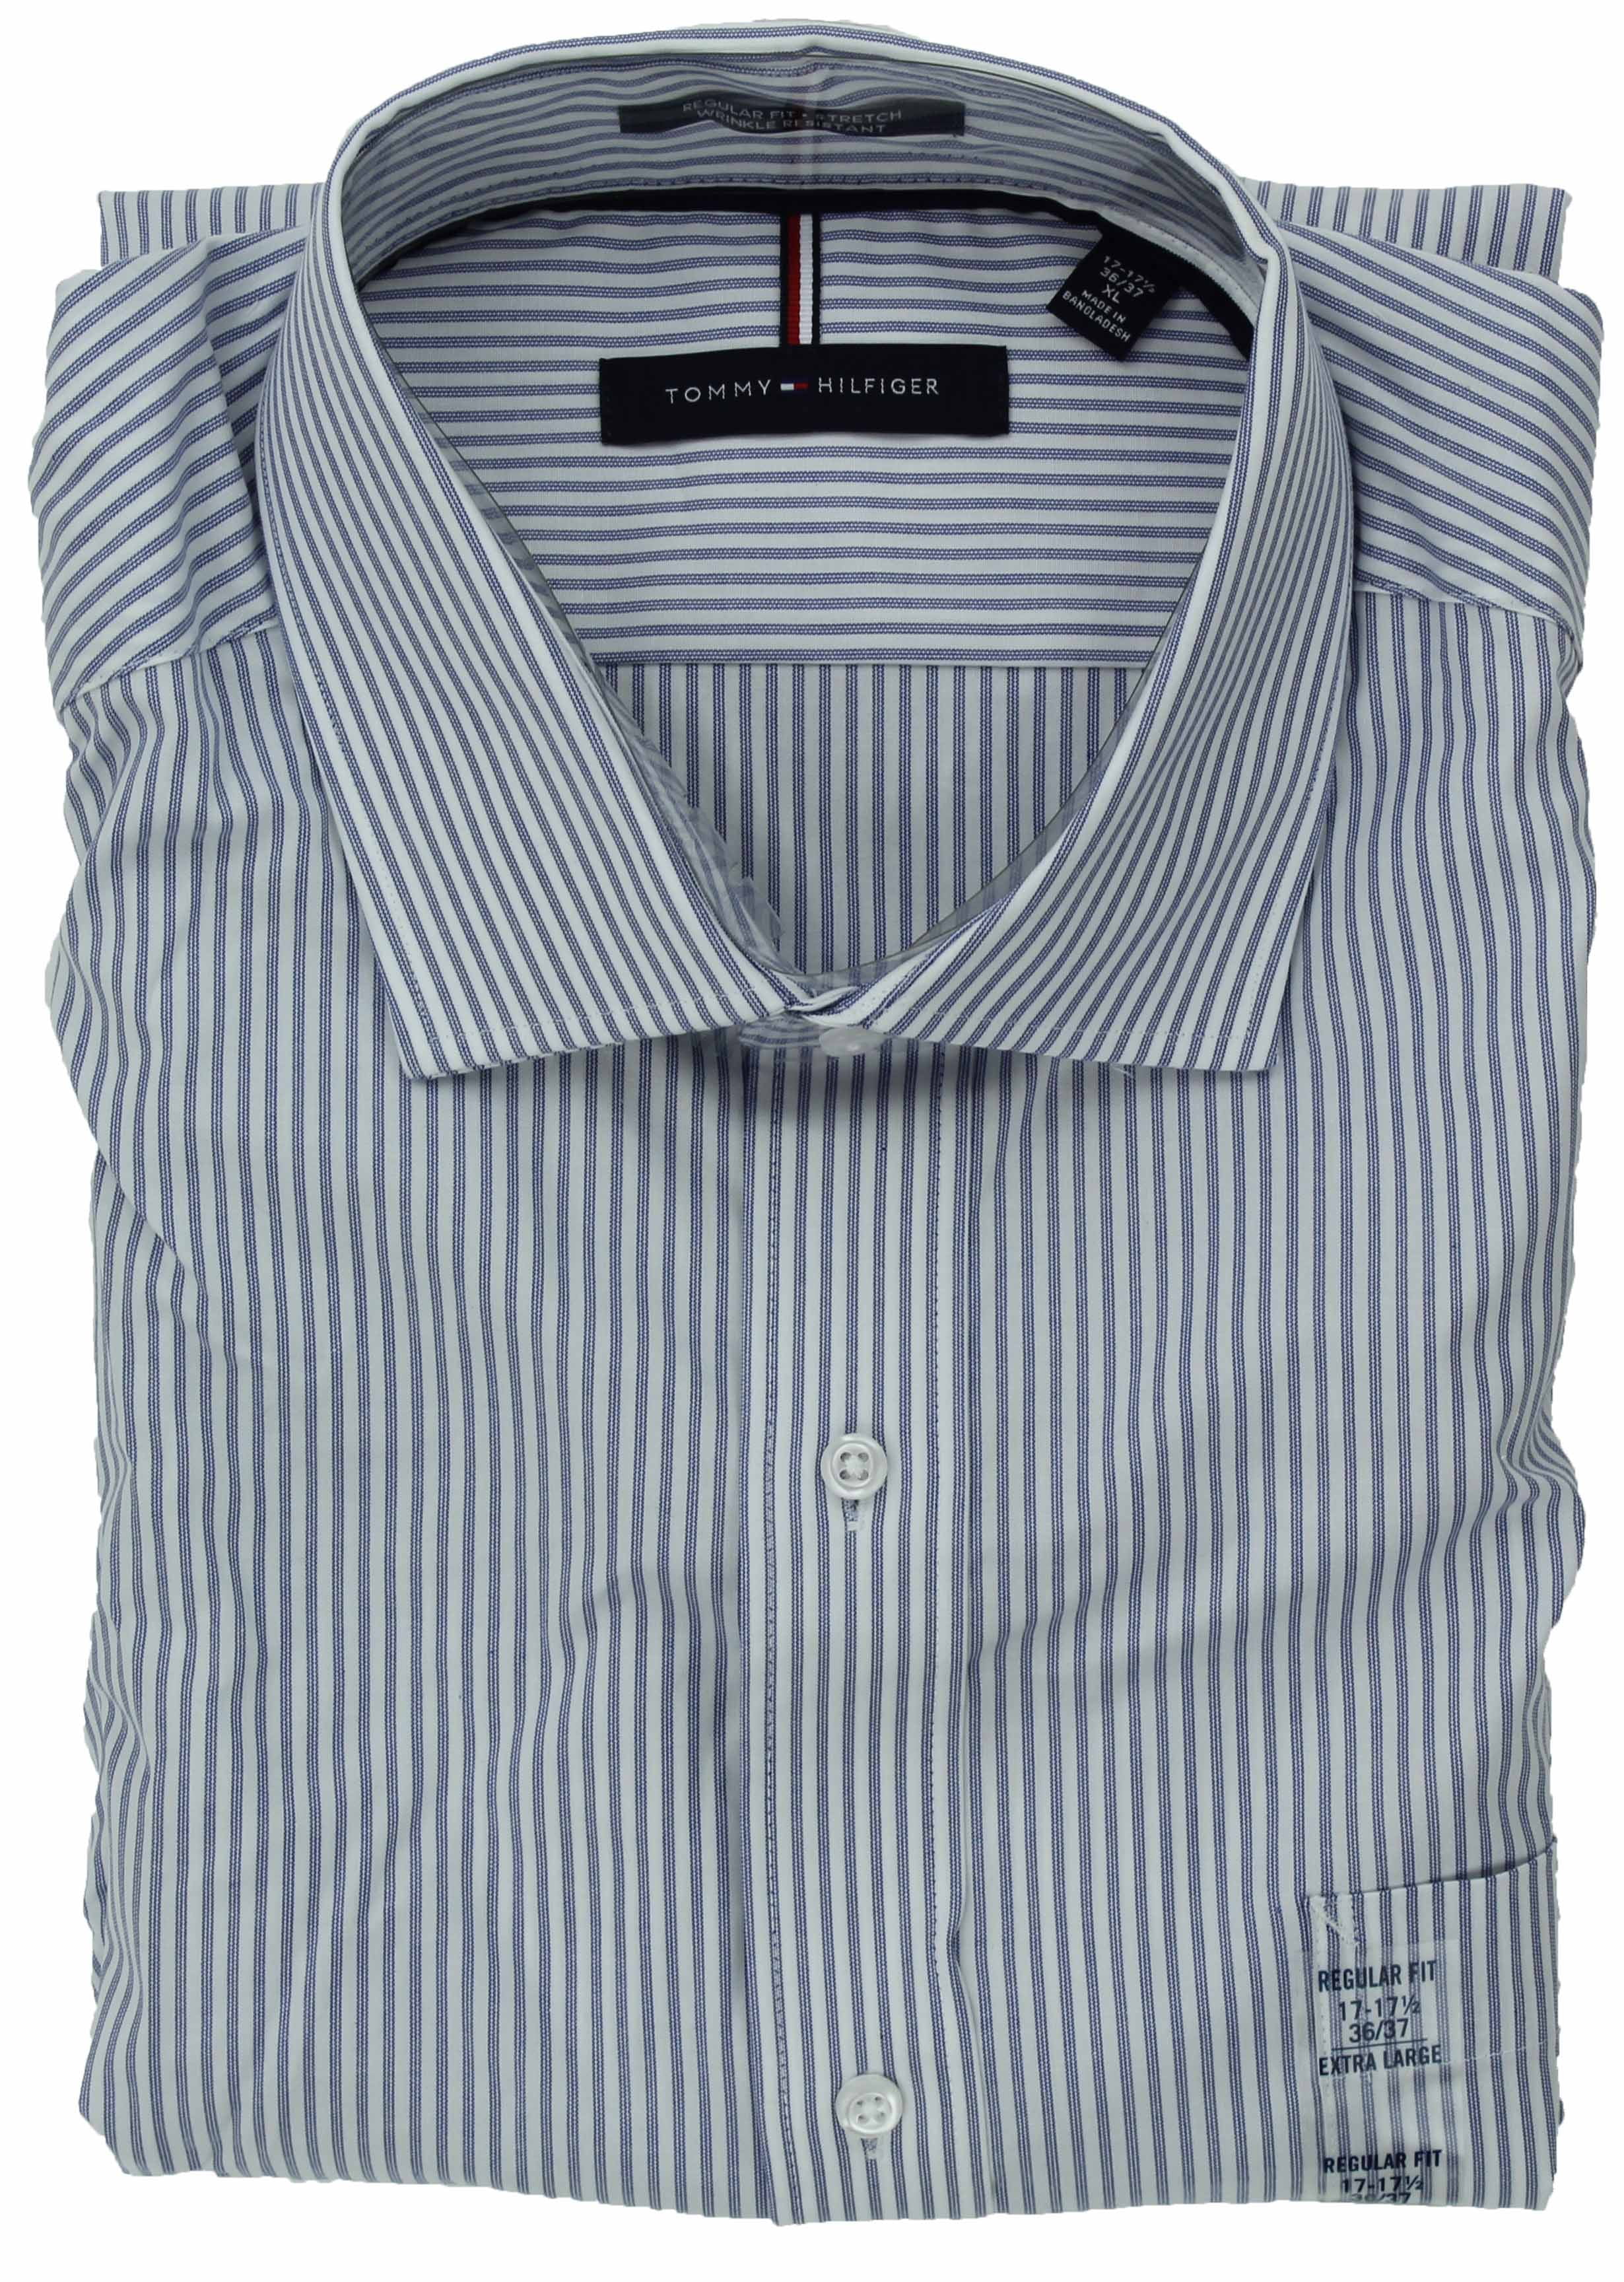 Tommy Hilfiger Mens Long Sleeve Regular Fit Shirt (Blue 15-15 1/2 X 34/35) - Walmart.com